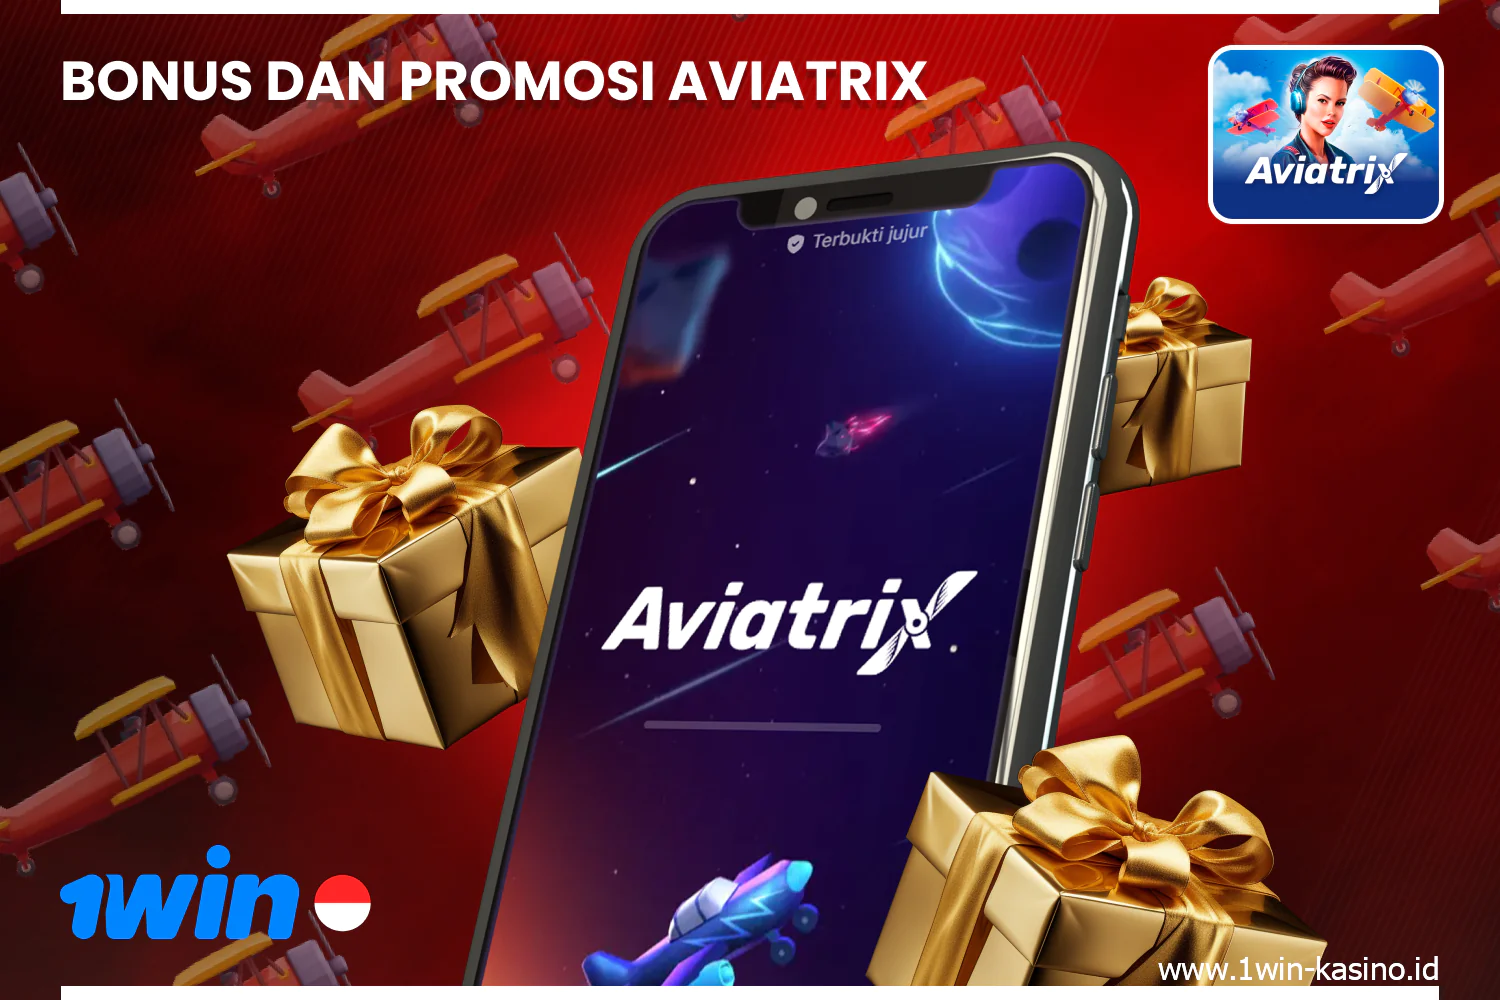 Beberapa pilihan bonus tersedia untuk pemain Indonesia di game Aviatrix 1win